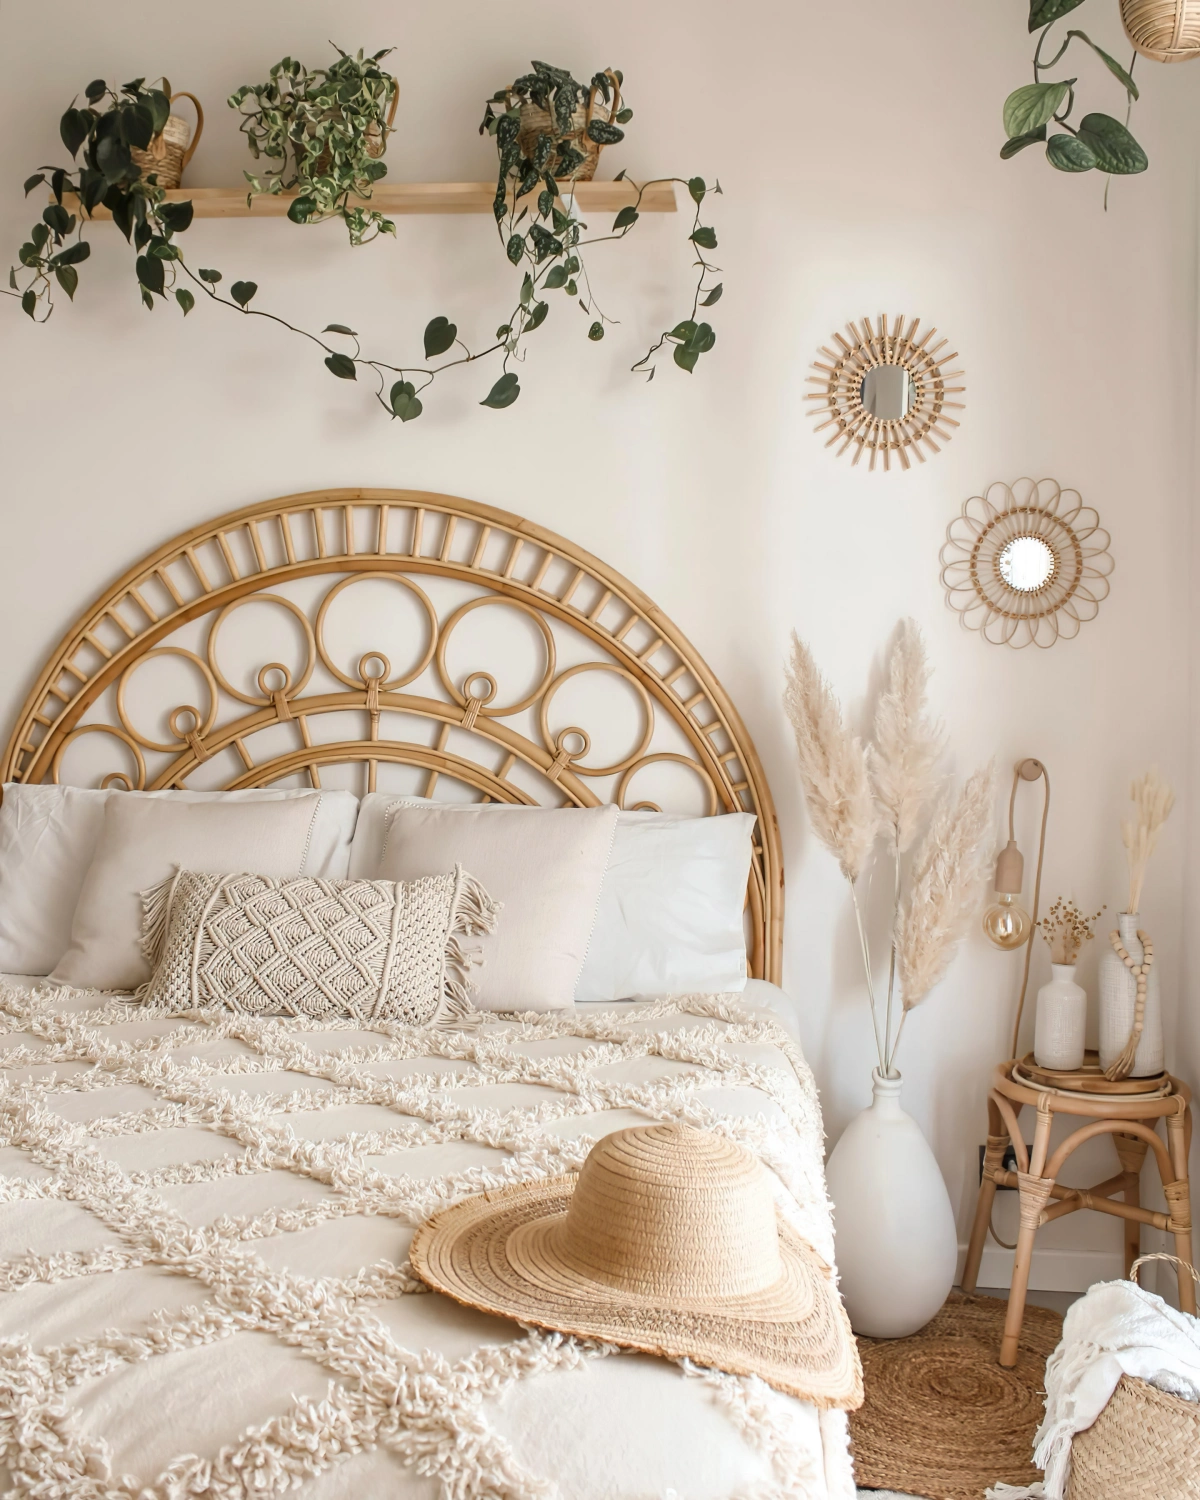 tete de lit rotin etagere bois plantes vertes chambre boheme scandinave mur miroirs soleil